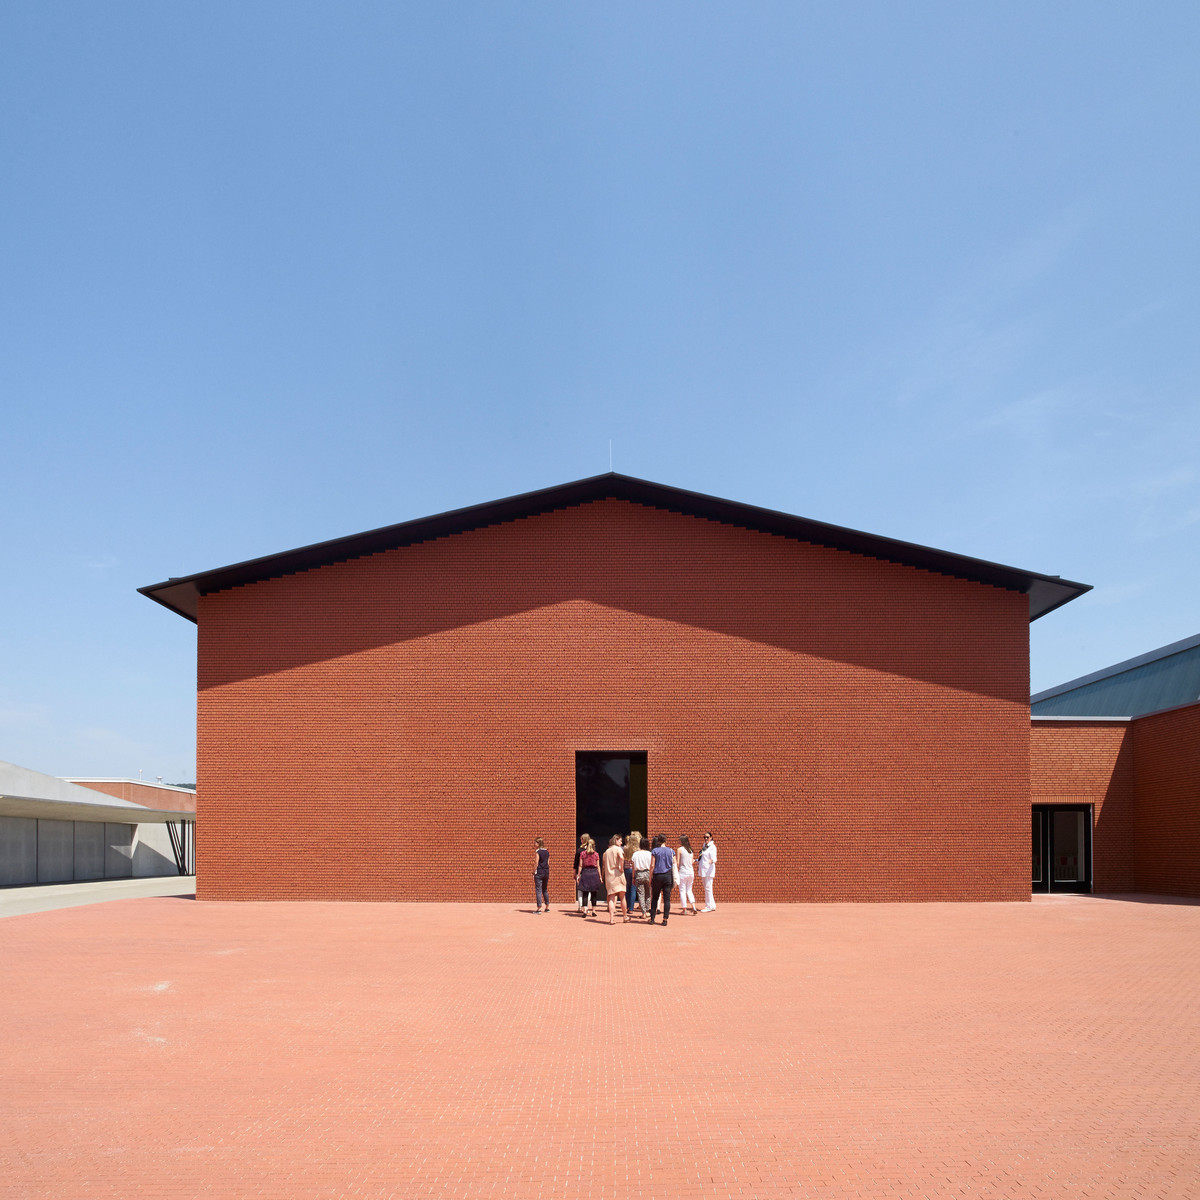 Außenansicht/ Exterior View Vitra Schaudepot, Herzog & de Meuron, 2015 Foto/ photo: © Vitra Design Museum, Julien Lanoo